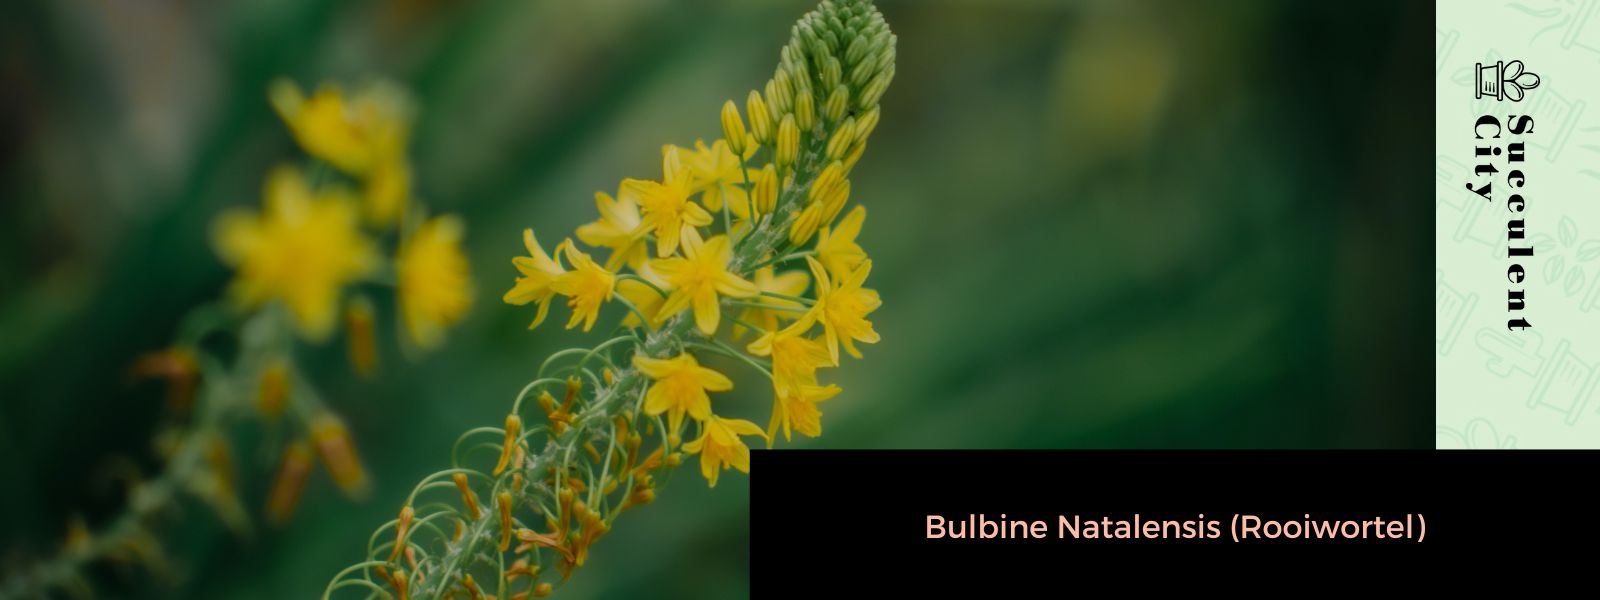 Bulbine Natalensis (Rooiwortel)